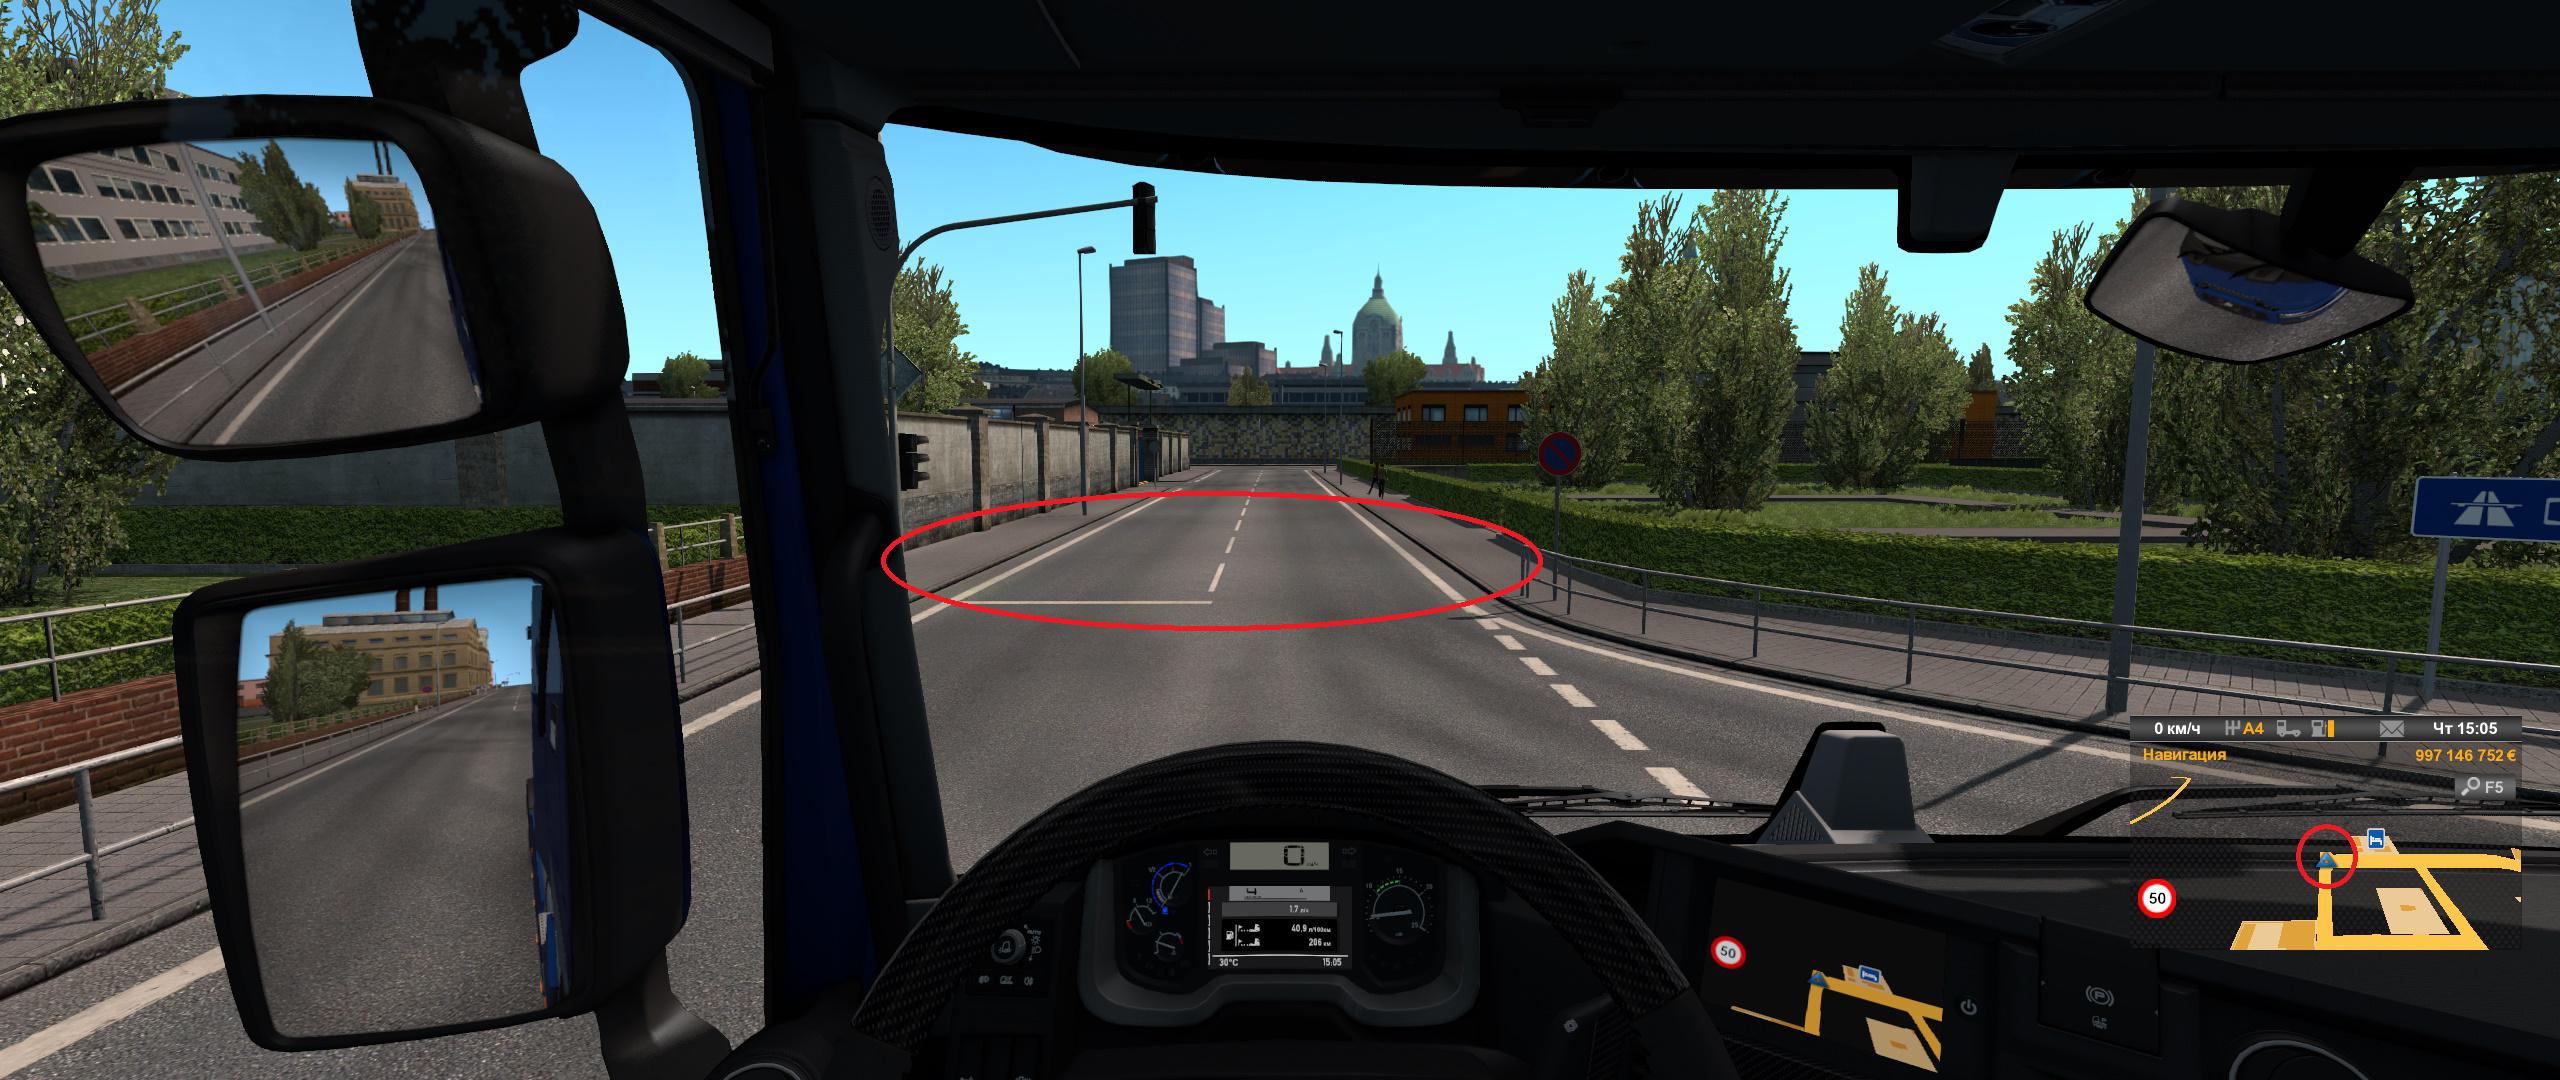 Евро трек симулятор моды автобусы. Евро трак симулятор 1. Euro Truck Simulator 2 1.1.1. Euro Truck Simulator 2 версия 1.39. Мод барьеры ETS 2.